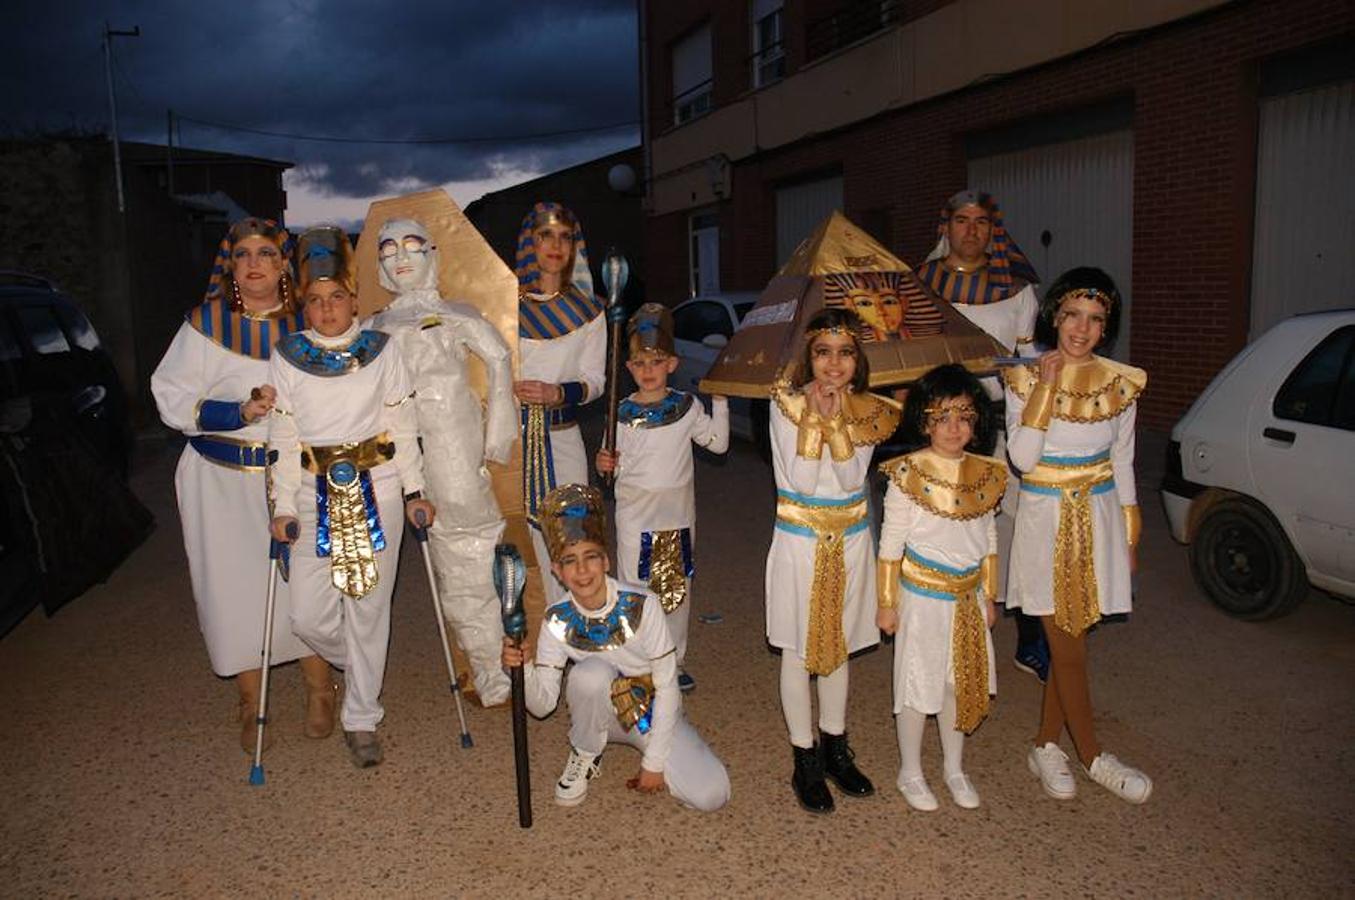 Afición y devoción por el Carnaval. La localidad de Valverde festejó el desfile en honor a Don Carnal con alegría y colorido. Los atuendos para la ocasión lucieron en todo sus esplendor entre peques y mayores.